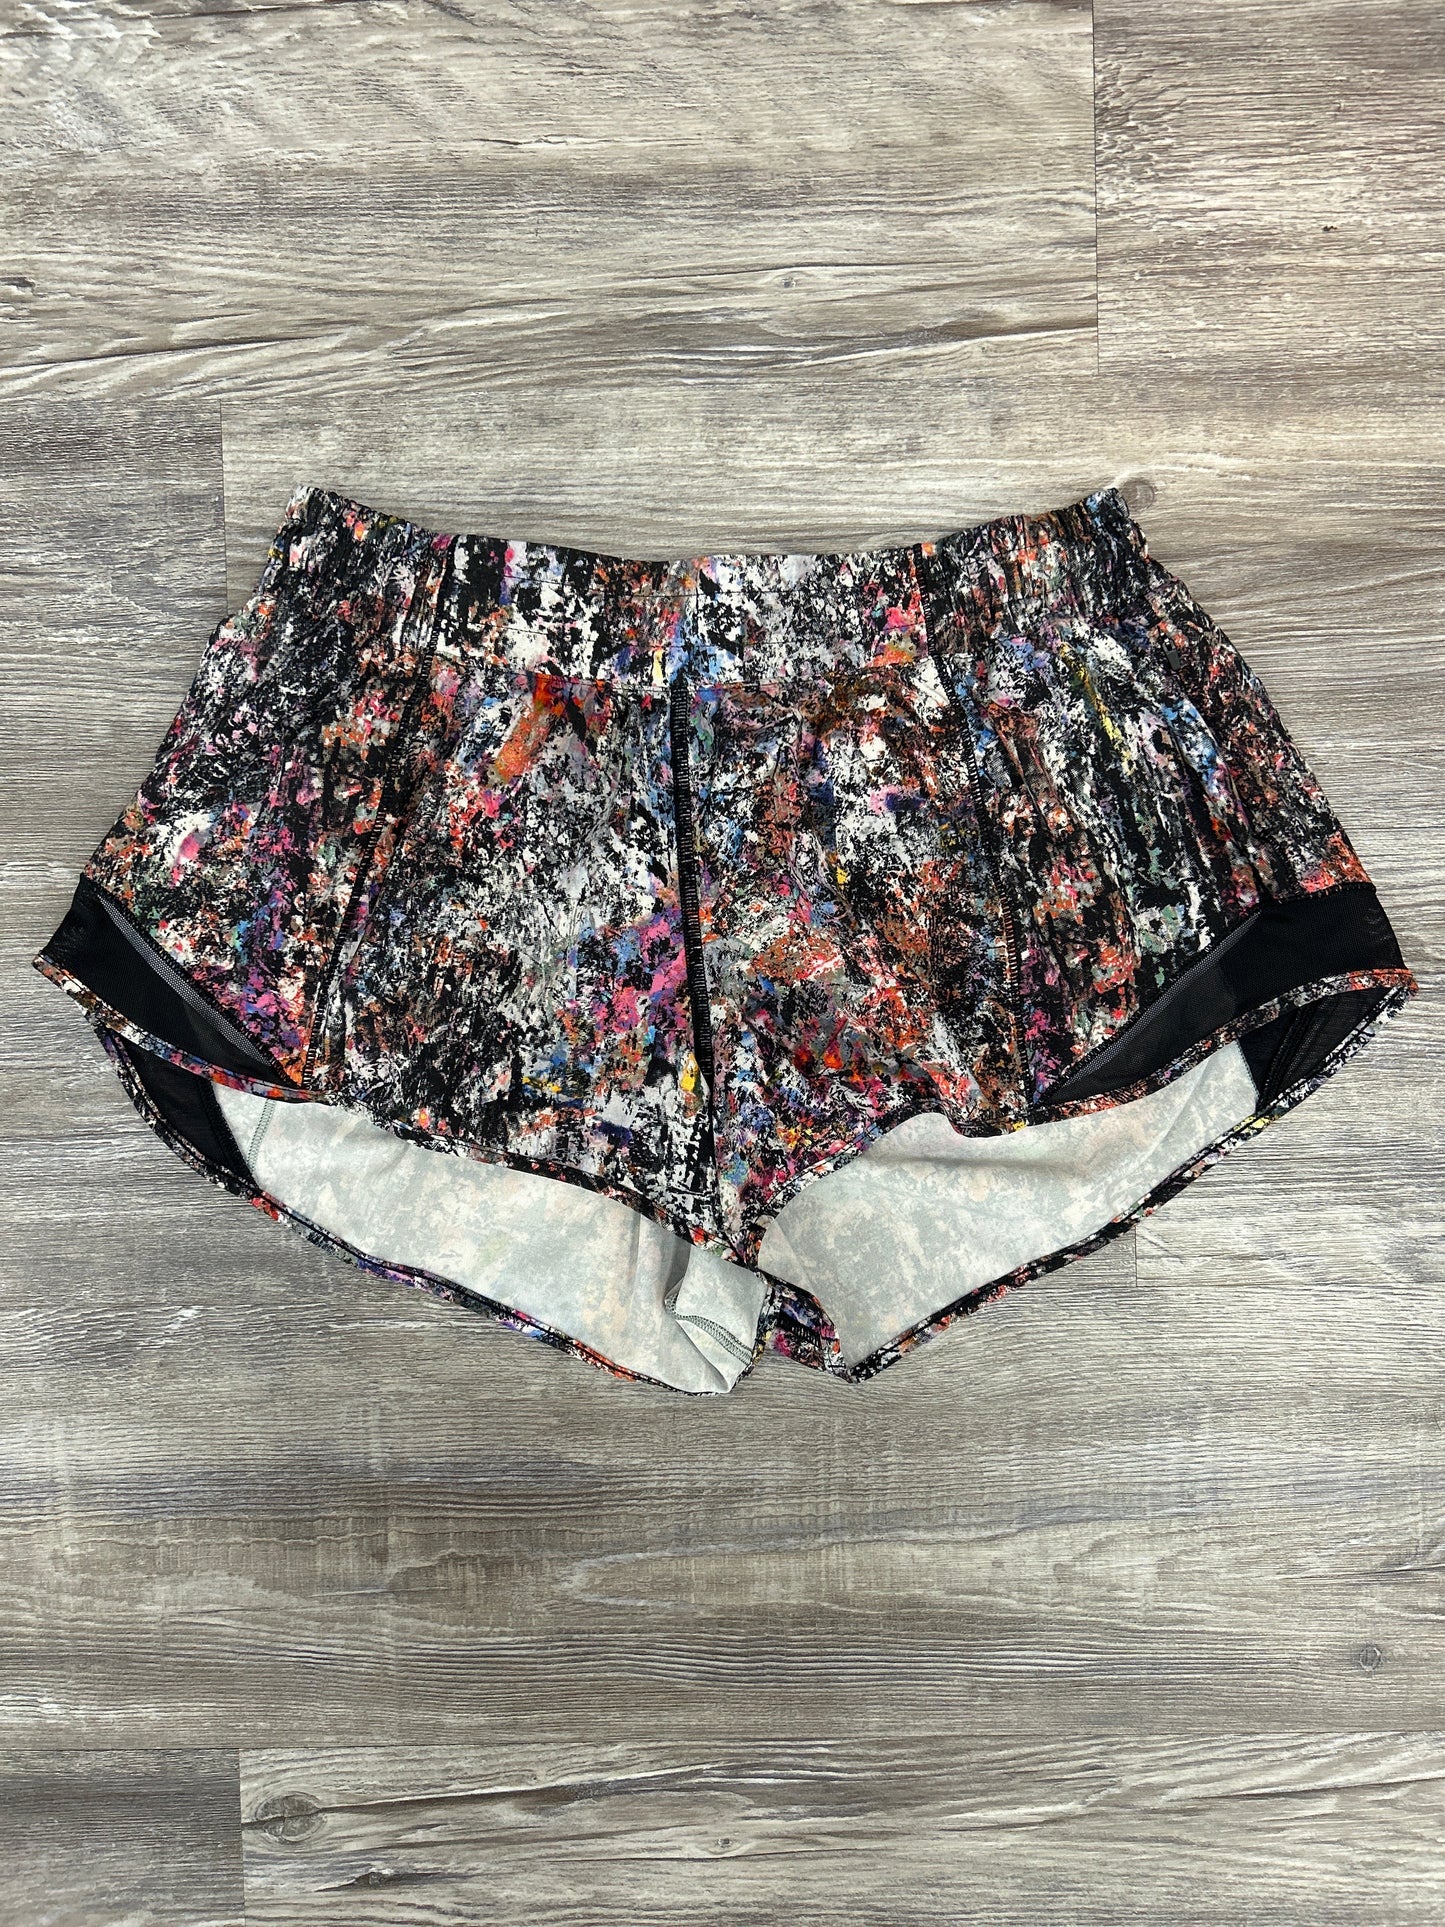 Multi-colored Athletic Shorts Lululemon, Size 10